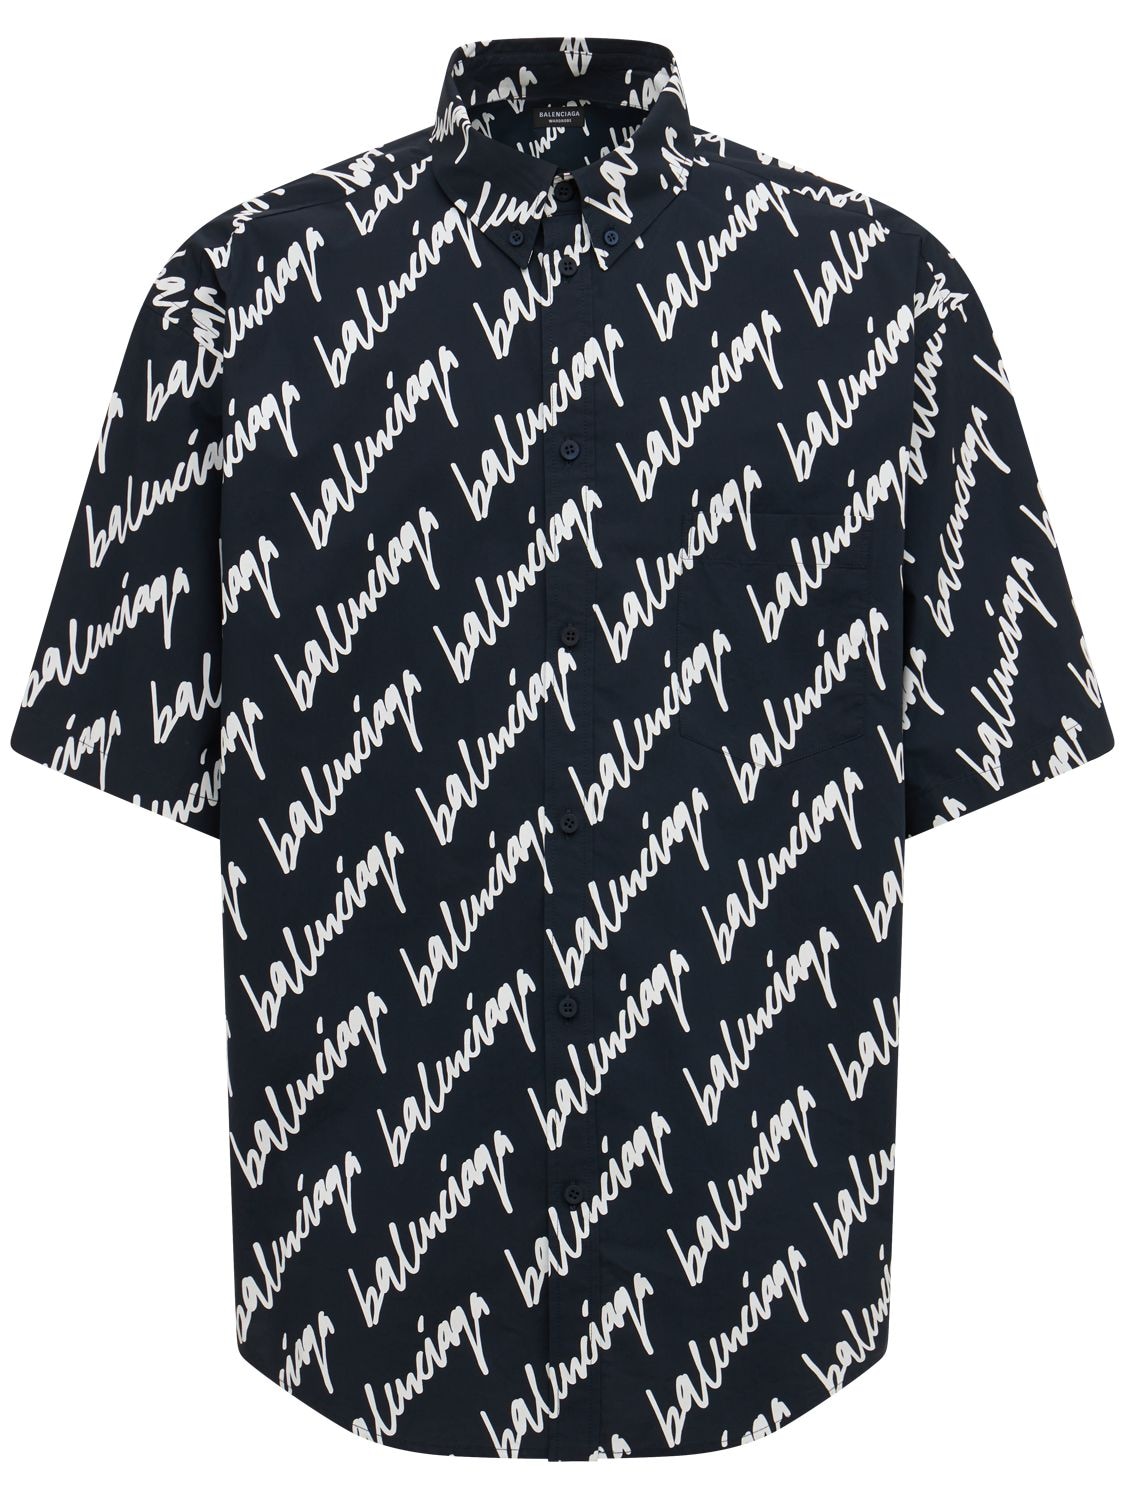 BALENCIAGA 大廓型修身短袖衬衫,75IOFW015-ODUWMG2